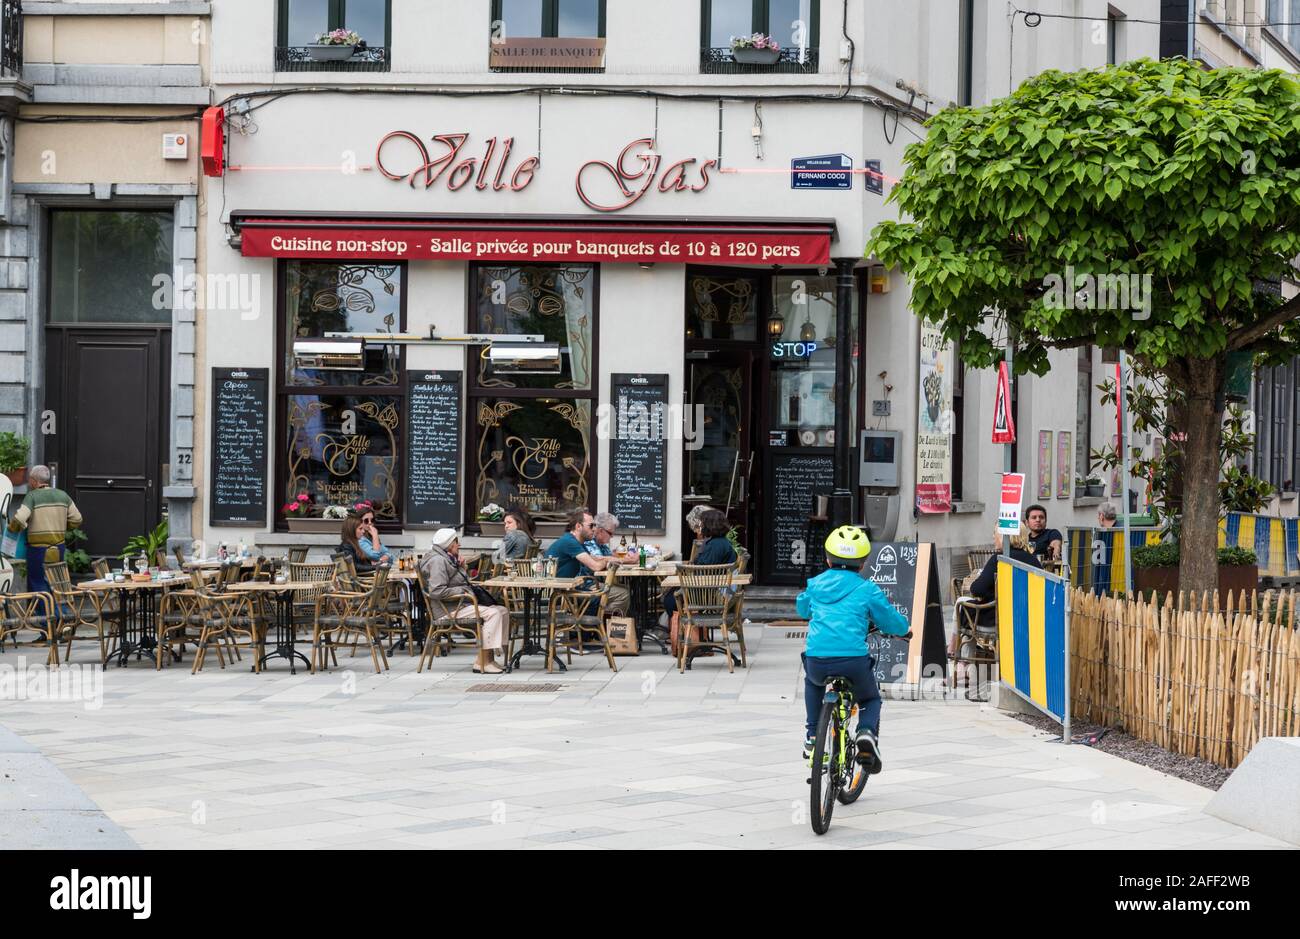 Ixelles, Bruxelles / Belgique - 05 31 2019 : la brasserie Volle Gas typique de Bruxelles sur la place Fernand Cocq Banque D'Images